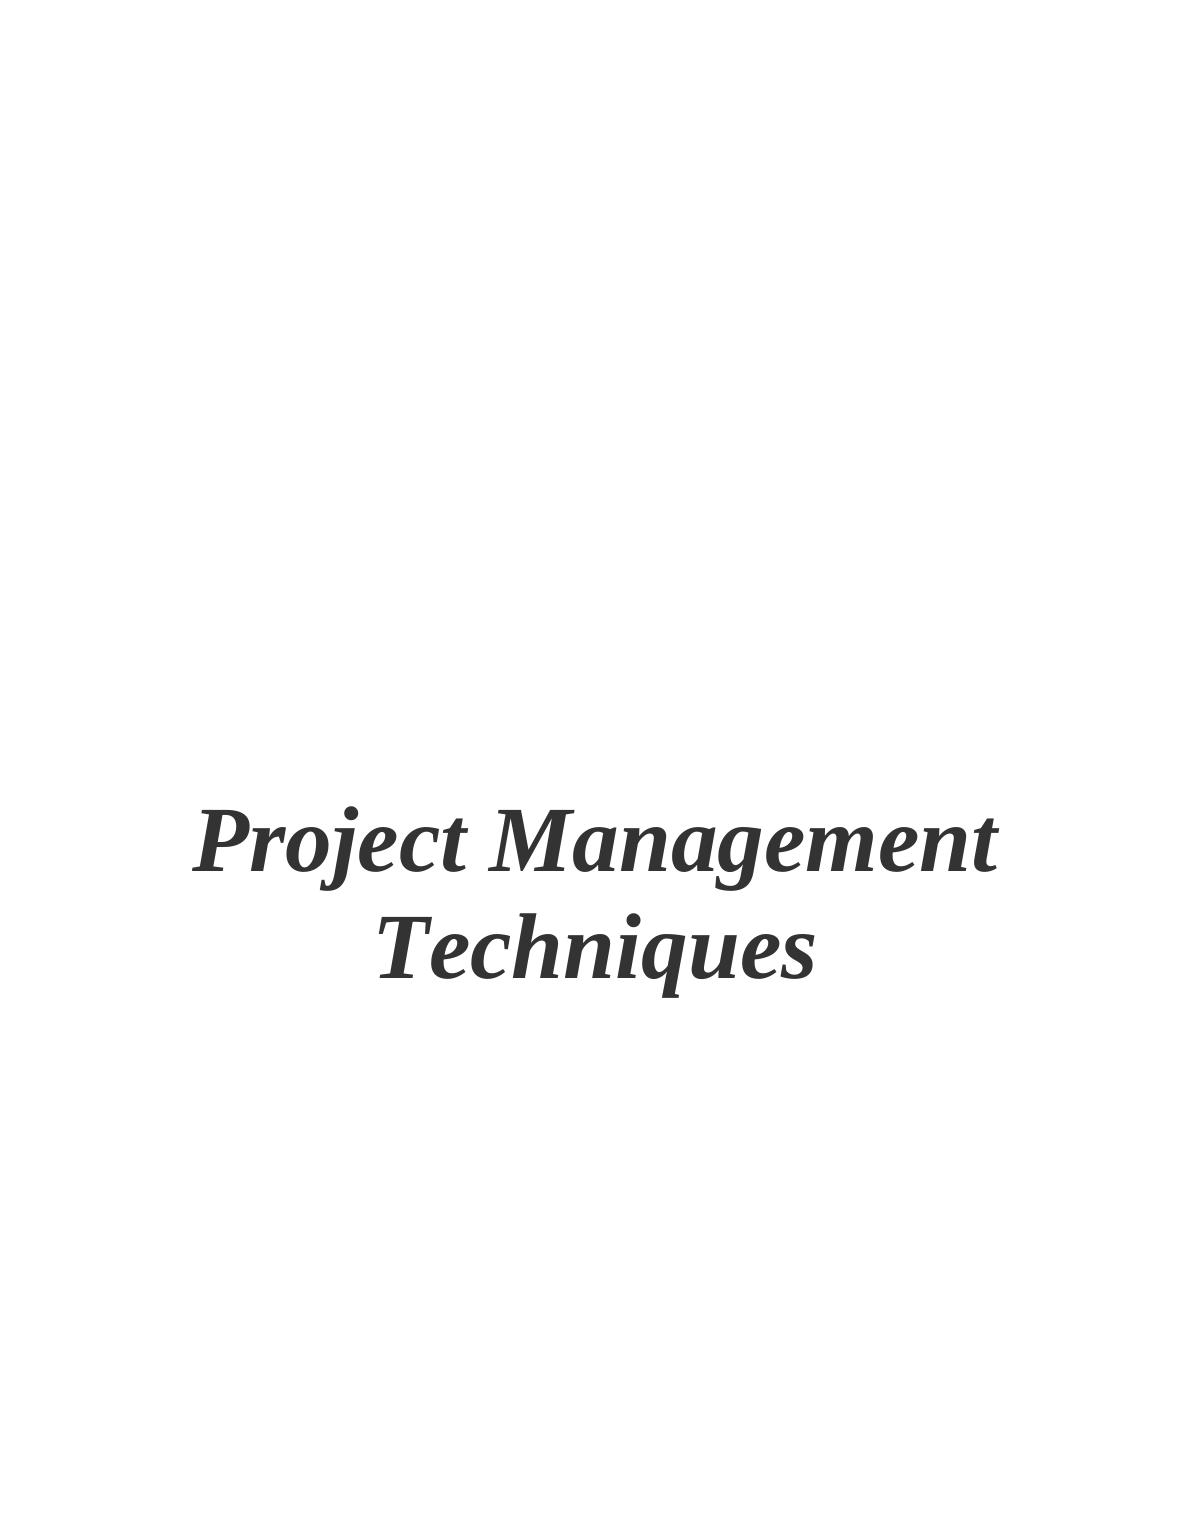 Project Management Techniques - Assignment_1